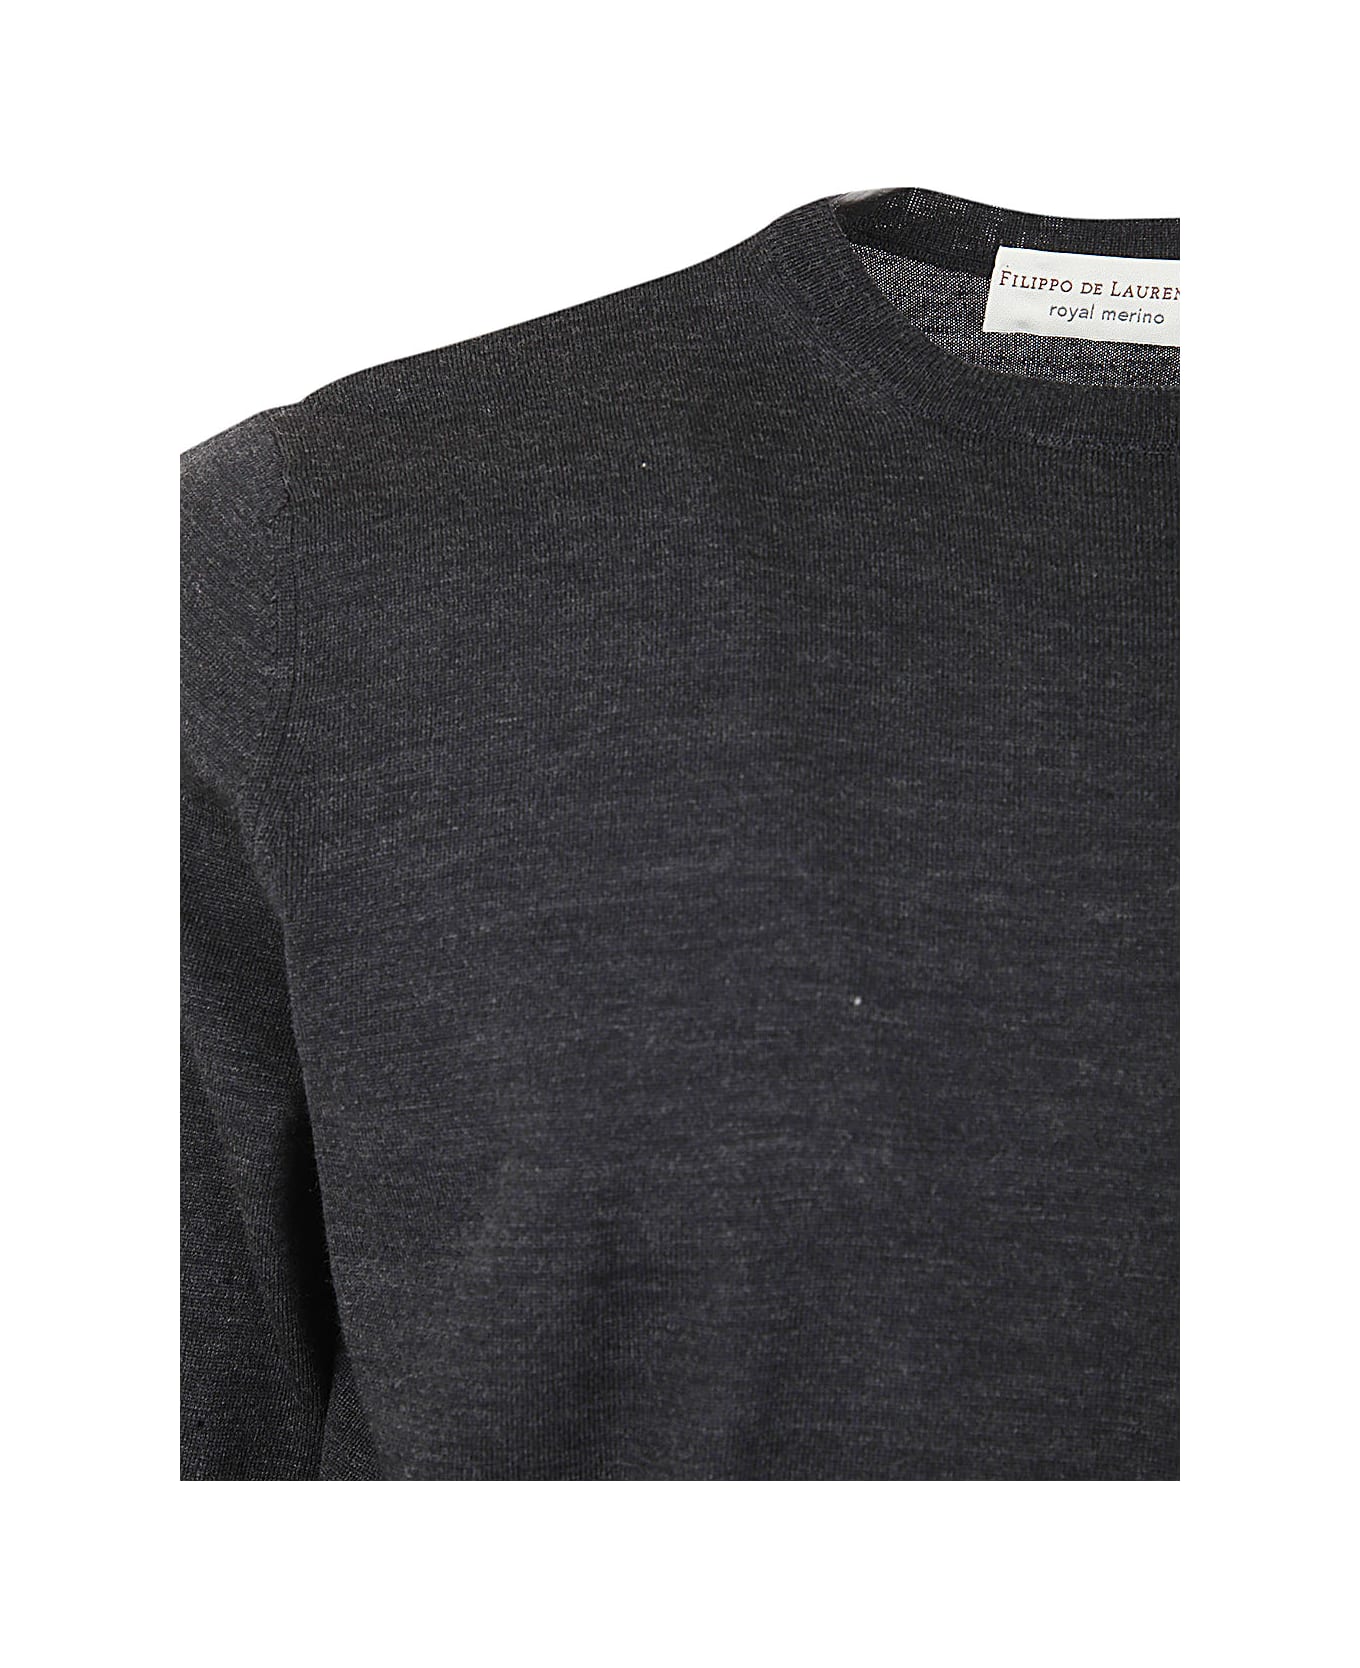 Filippo De Laurentiis Royal Merino Long Sleeves Crew Neck Sweater - Anthracite ニットウェア